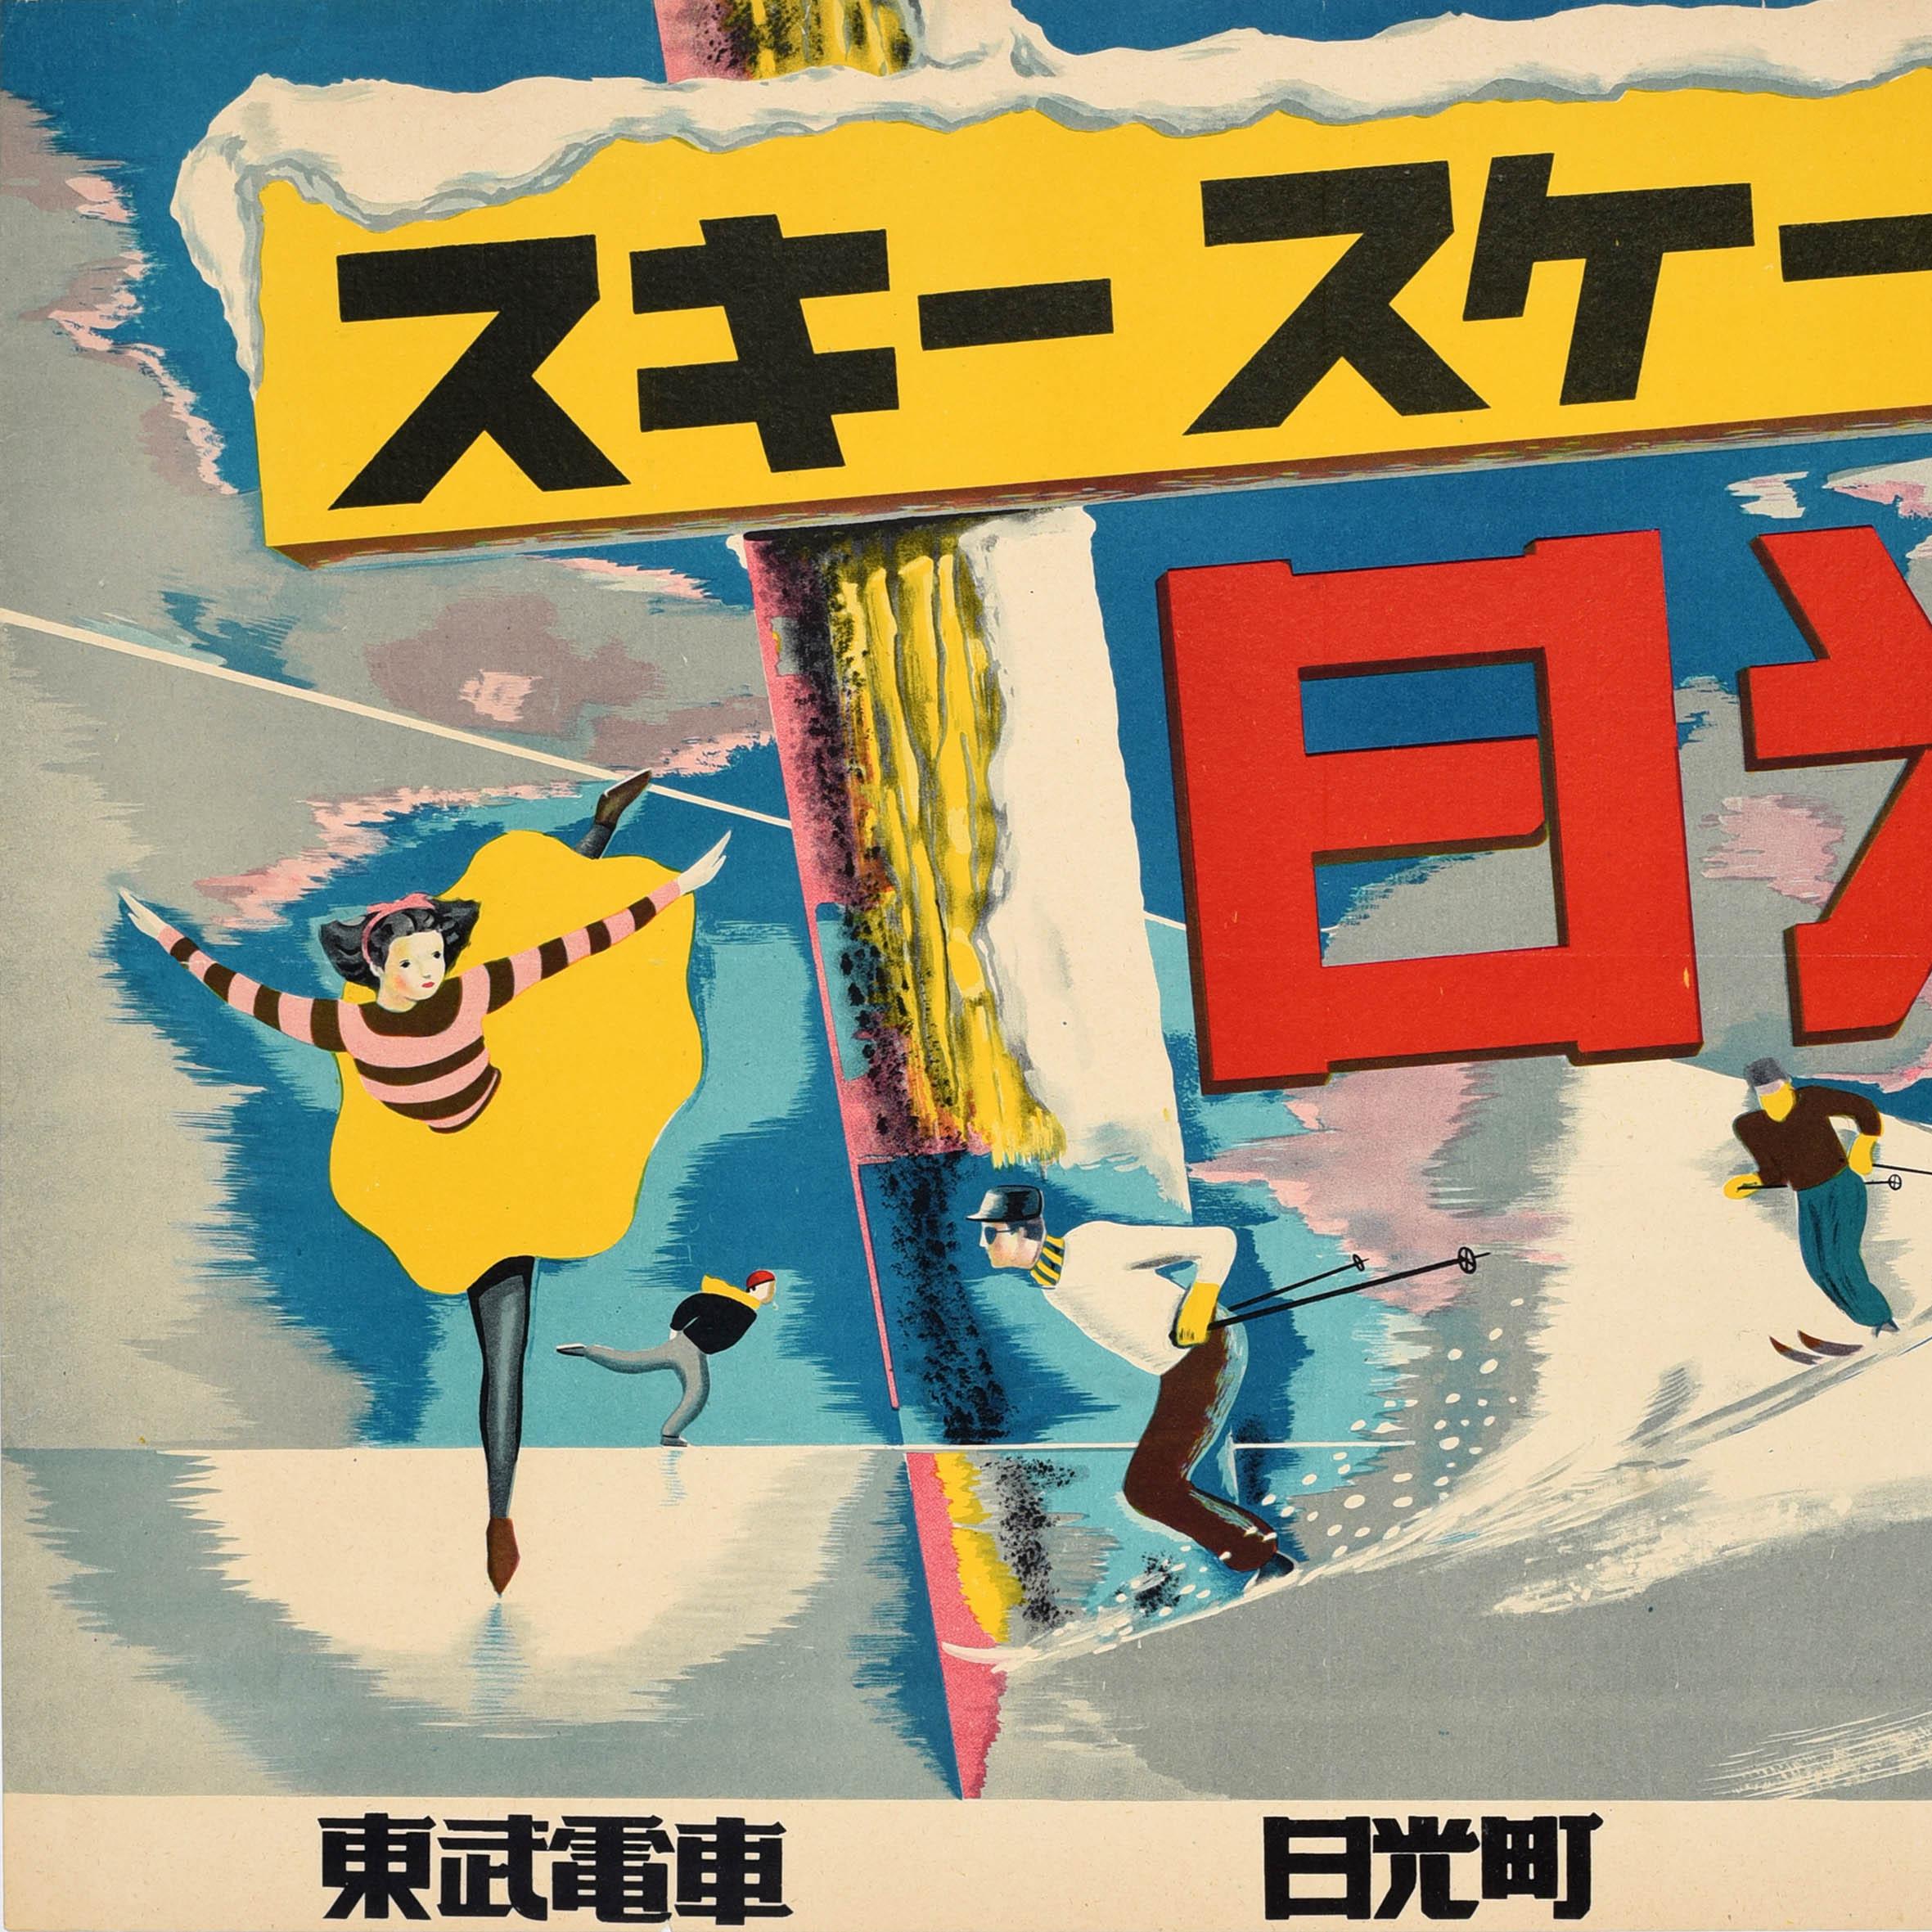 Original-Wintersport-Reiseplakat mit Werbung für den Tobu-Zug nach Nikko - Ski Skating Sunshine - mit farbenfrohen Bildern von Schlittschuhläufern und Skifahrern, die im Schnee bergab fahren, mit den fetten japanischen Schriftzeichen auf einem